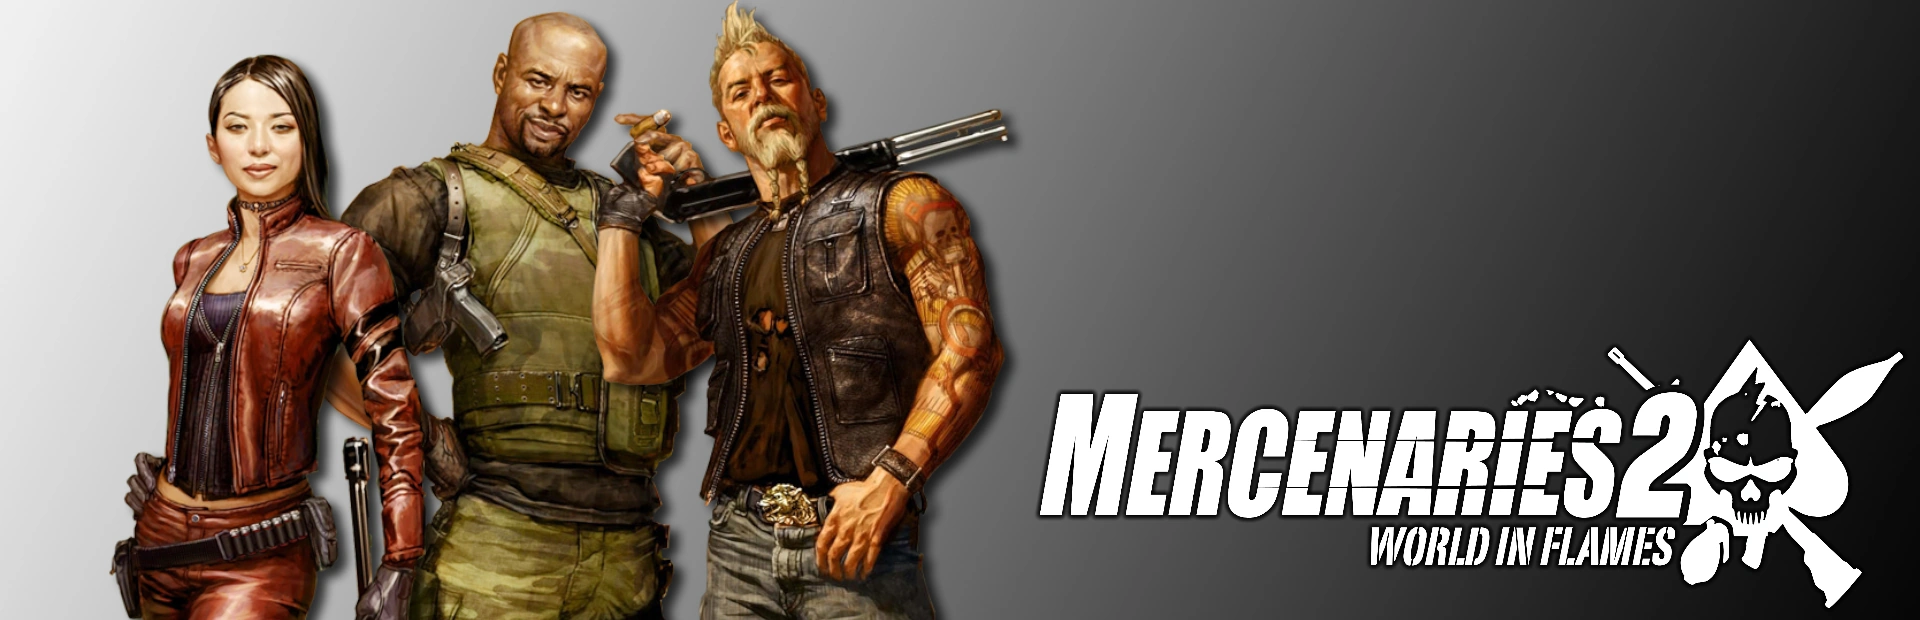 دانلود بازی Mercenaries 2: World in Flames برای کامپیوتر | گیمباتو